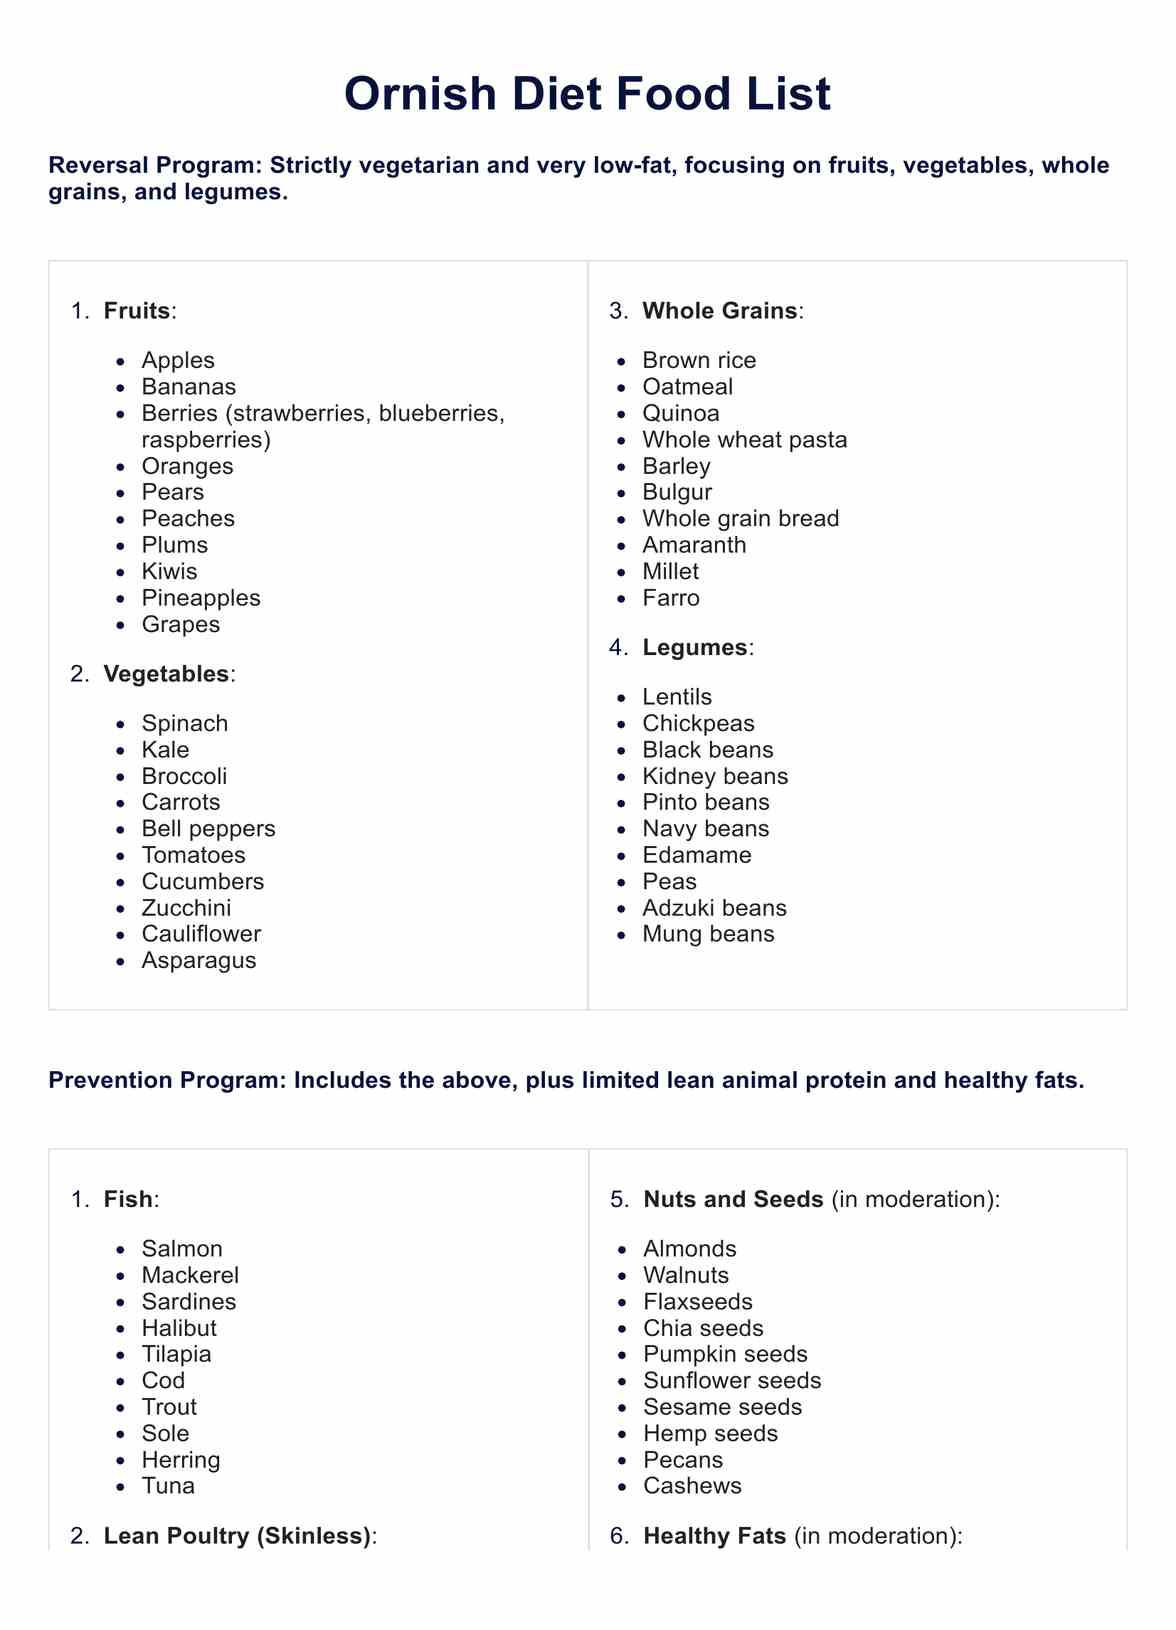 Ornish Diet Food List PDF Example